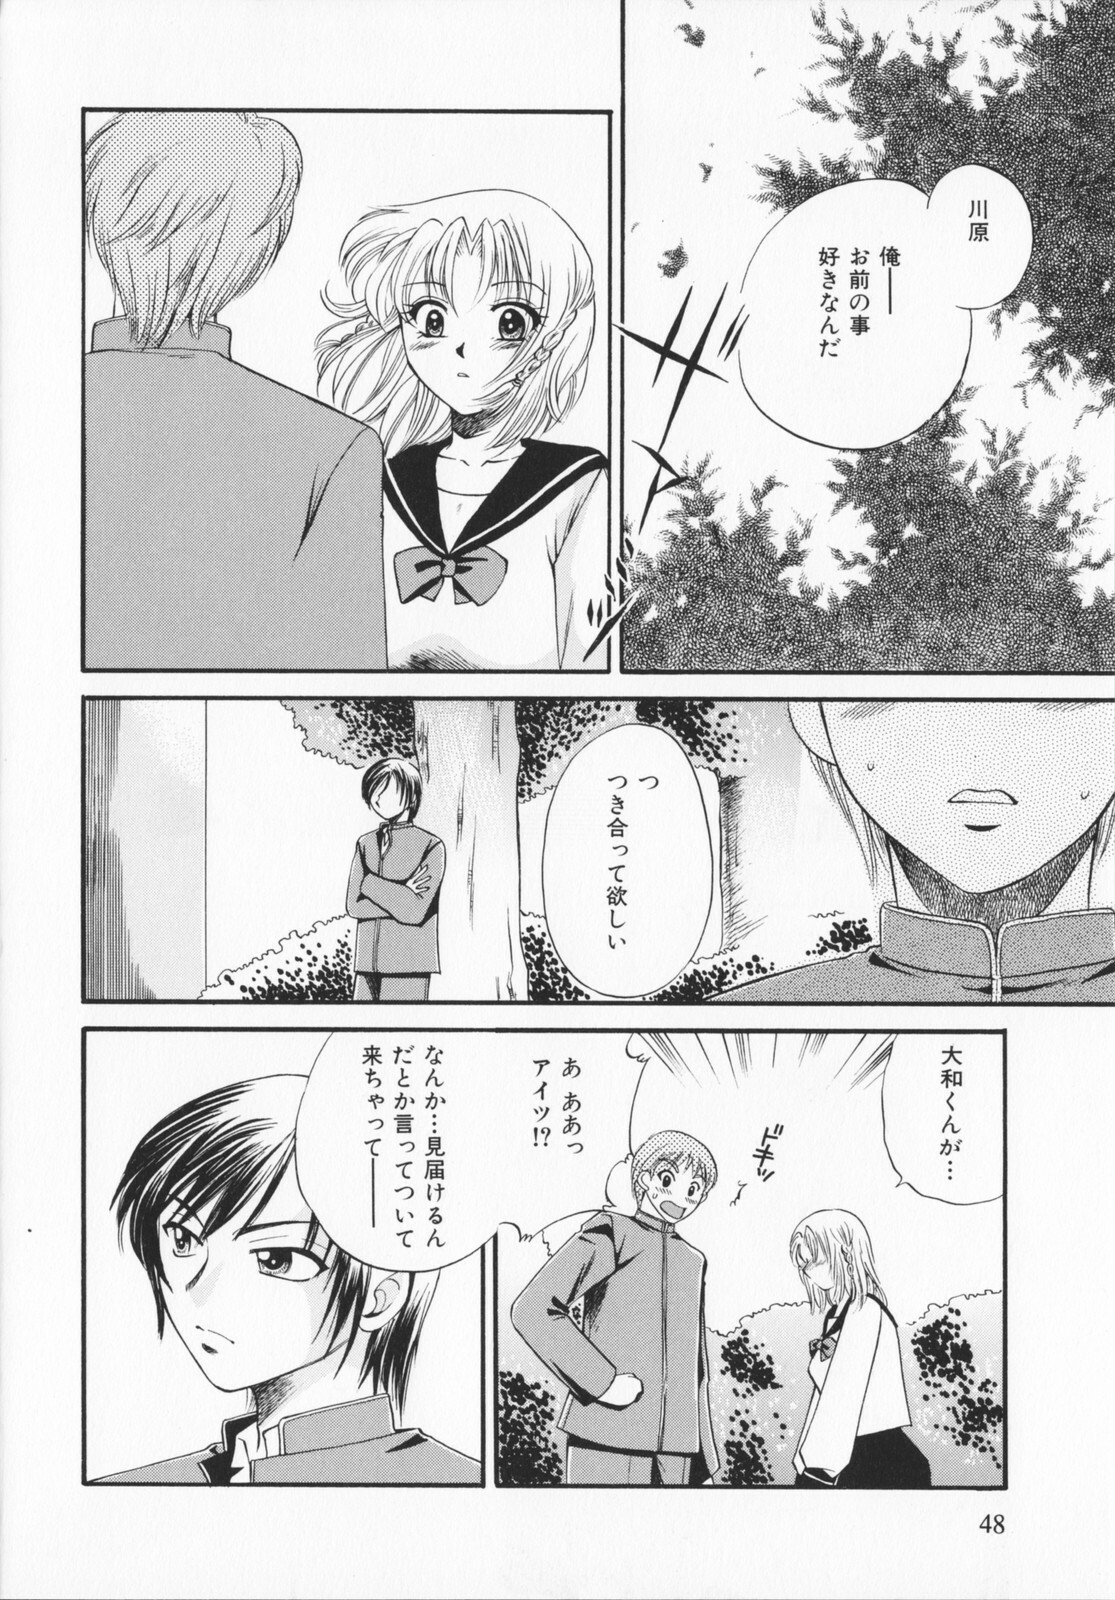 [Ureshino Megumi]Genkaiharetsu (LIMIT EXPLOSION) page 47 full